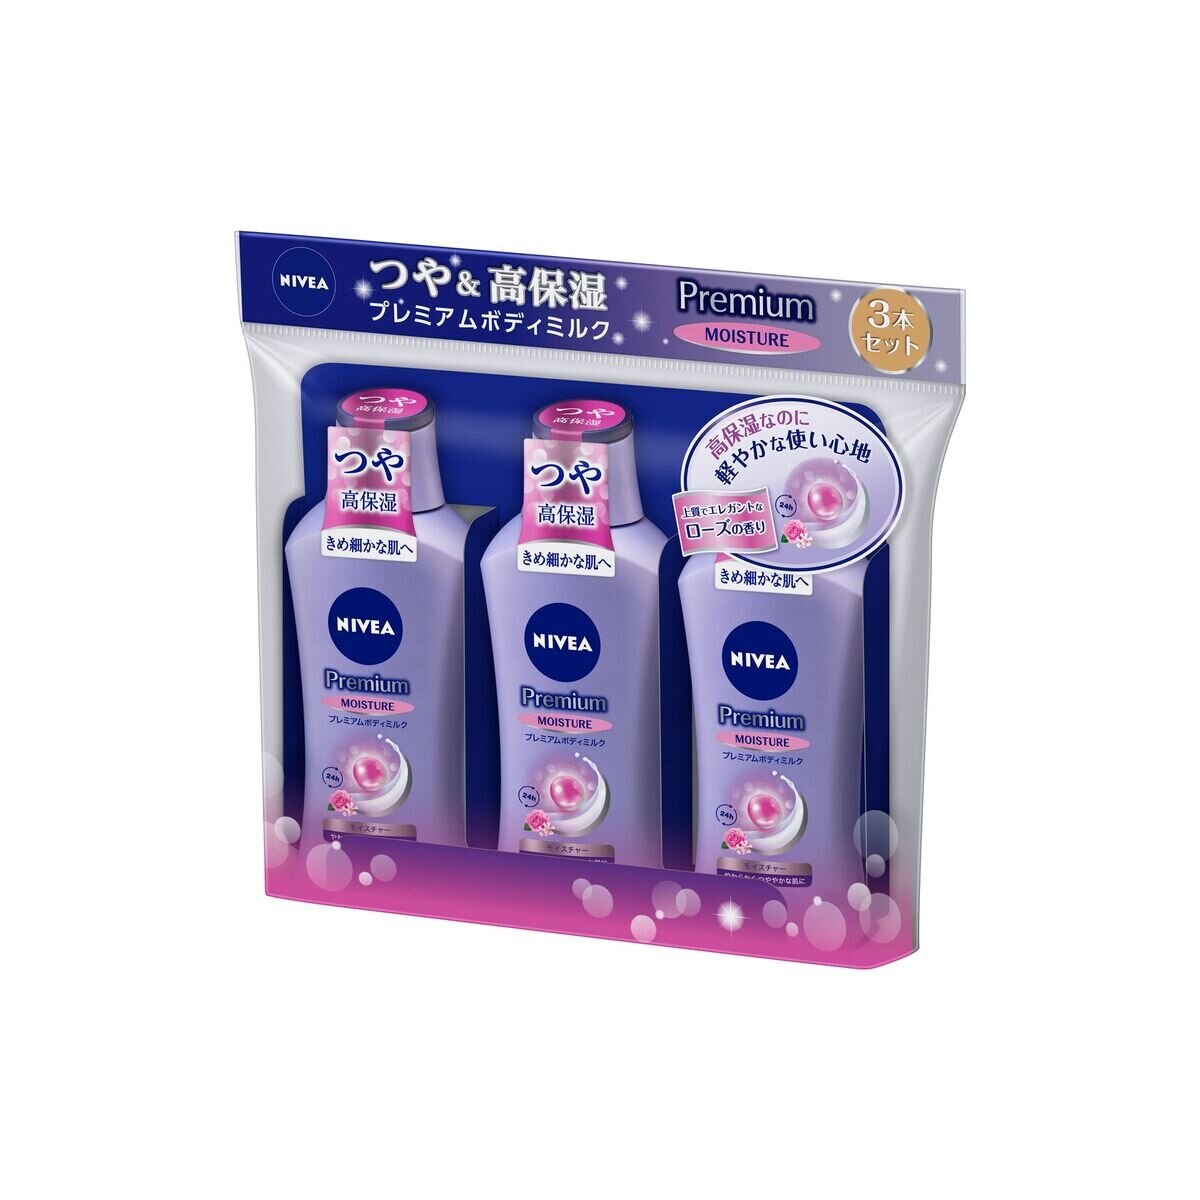 ニベア プレミアムボディミルク モイスチャー 200g x 3本セット | Costco Japan